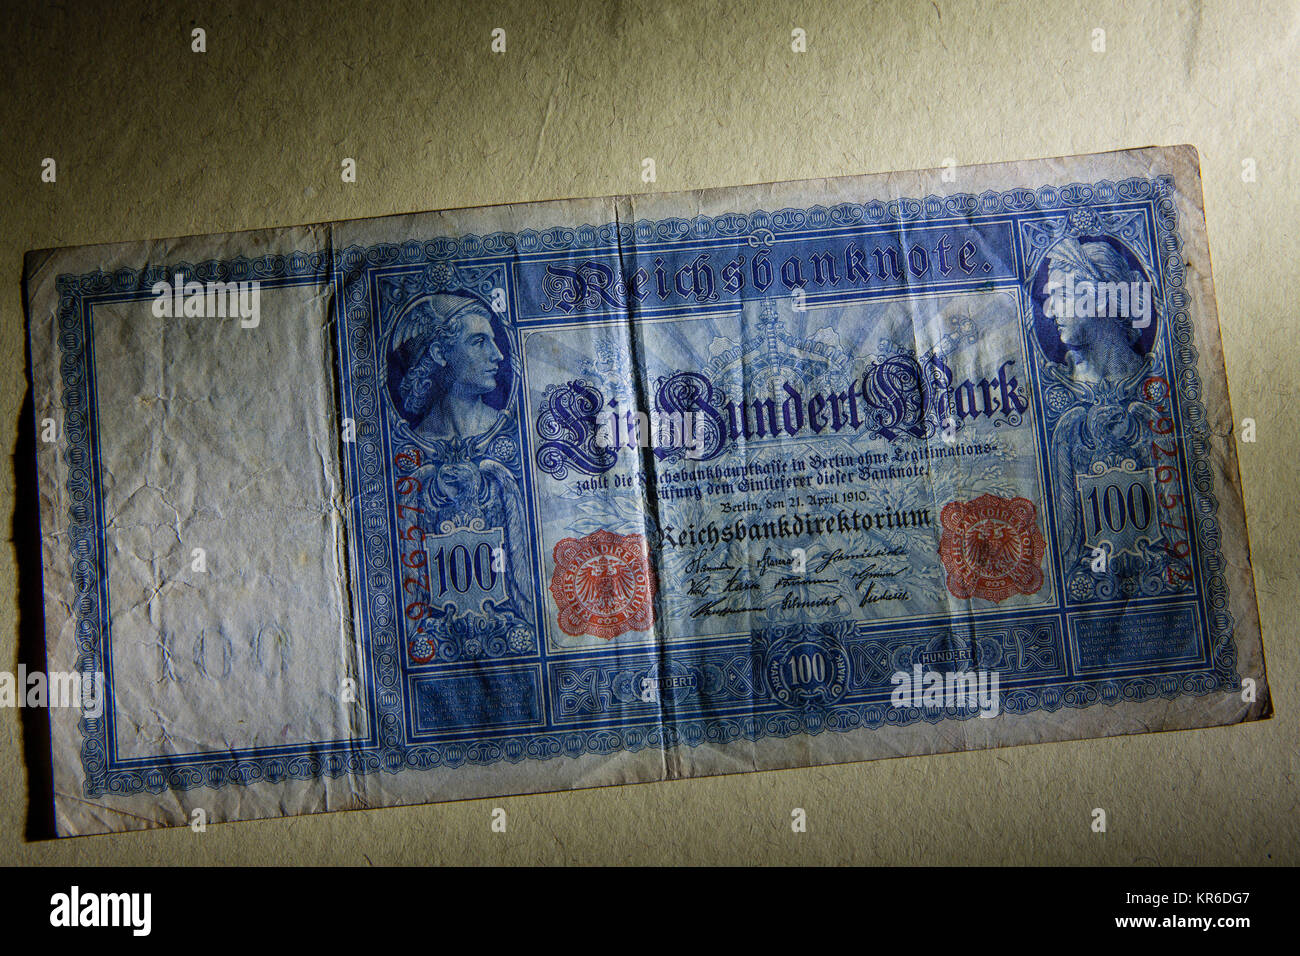 Germany, 100 Mark bank note of the German Reichsbank from 1910. -   Deutschland, 100 Mark Reichsbanknote von 1910, Deutsche Reichsbank. Stock Photo